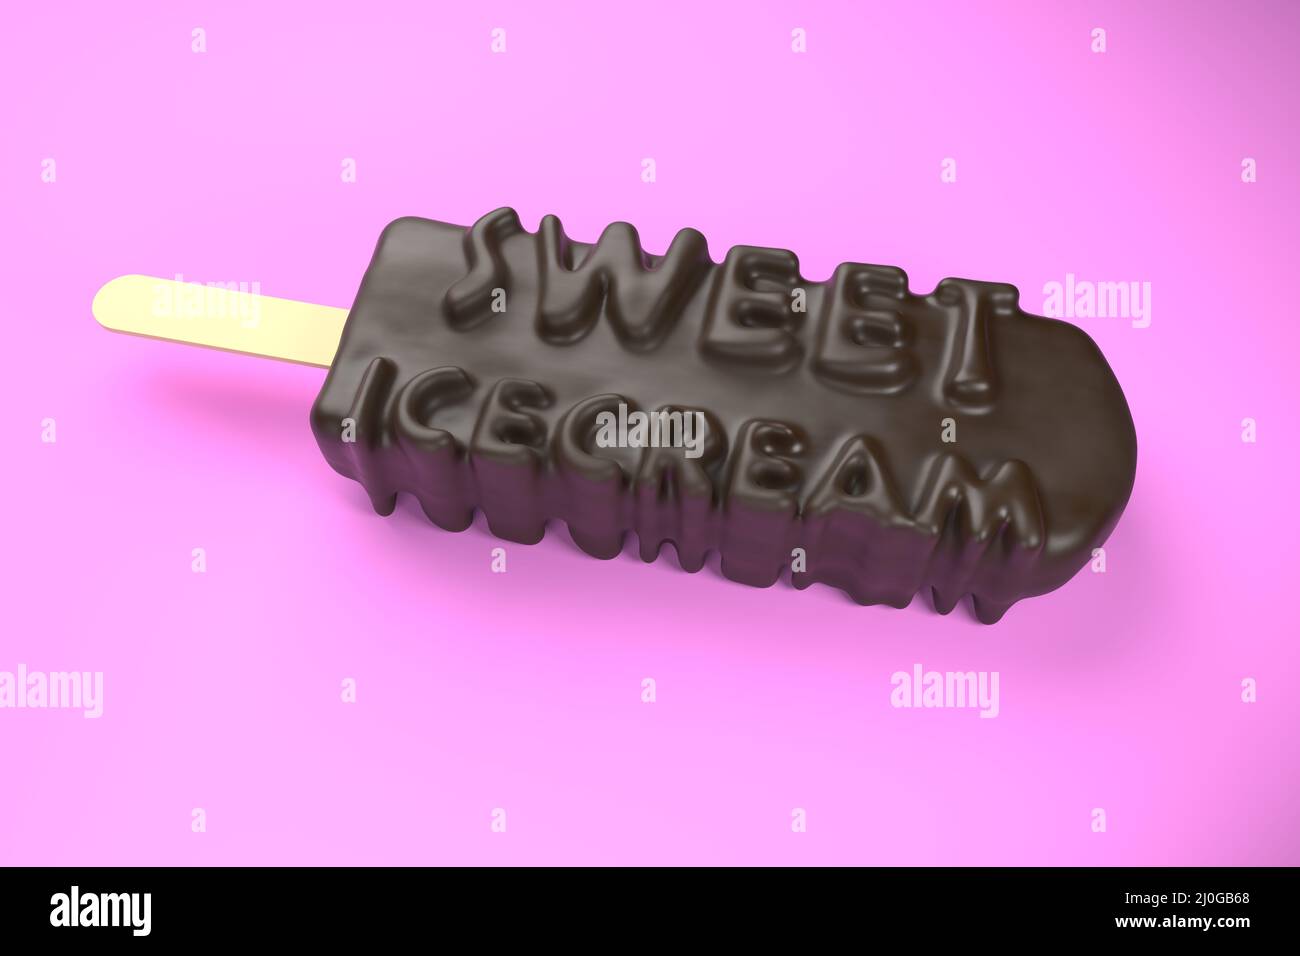 Testo in sicecream dolce sul gelato al cioccolato classico isolato sopra immagine 3d su sfondo rosa Foto Stock